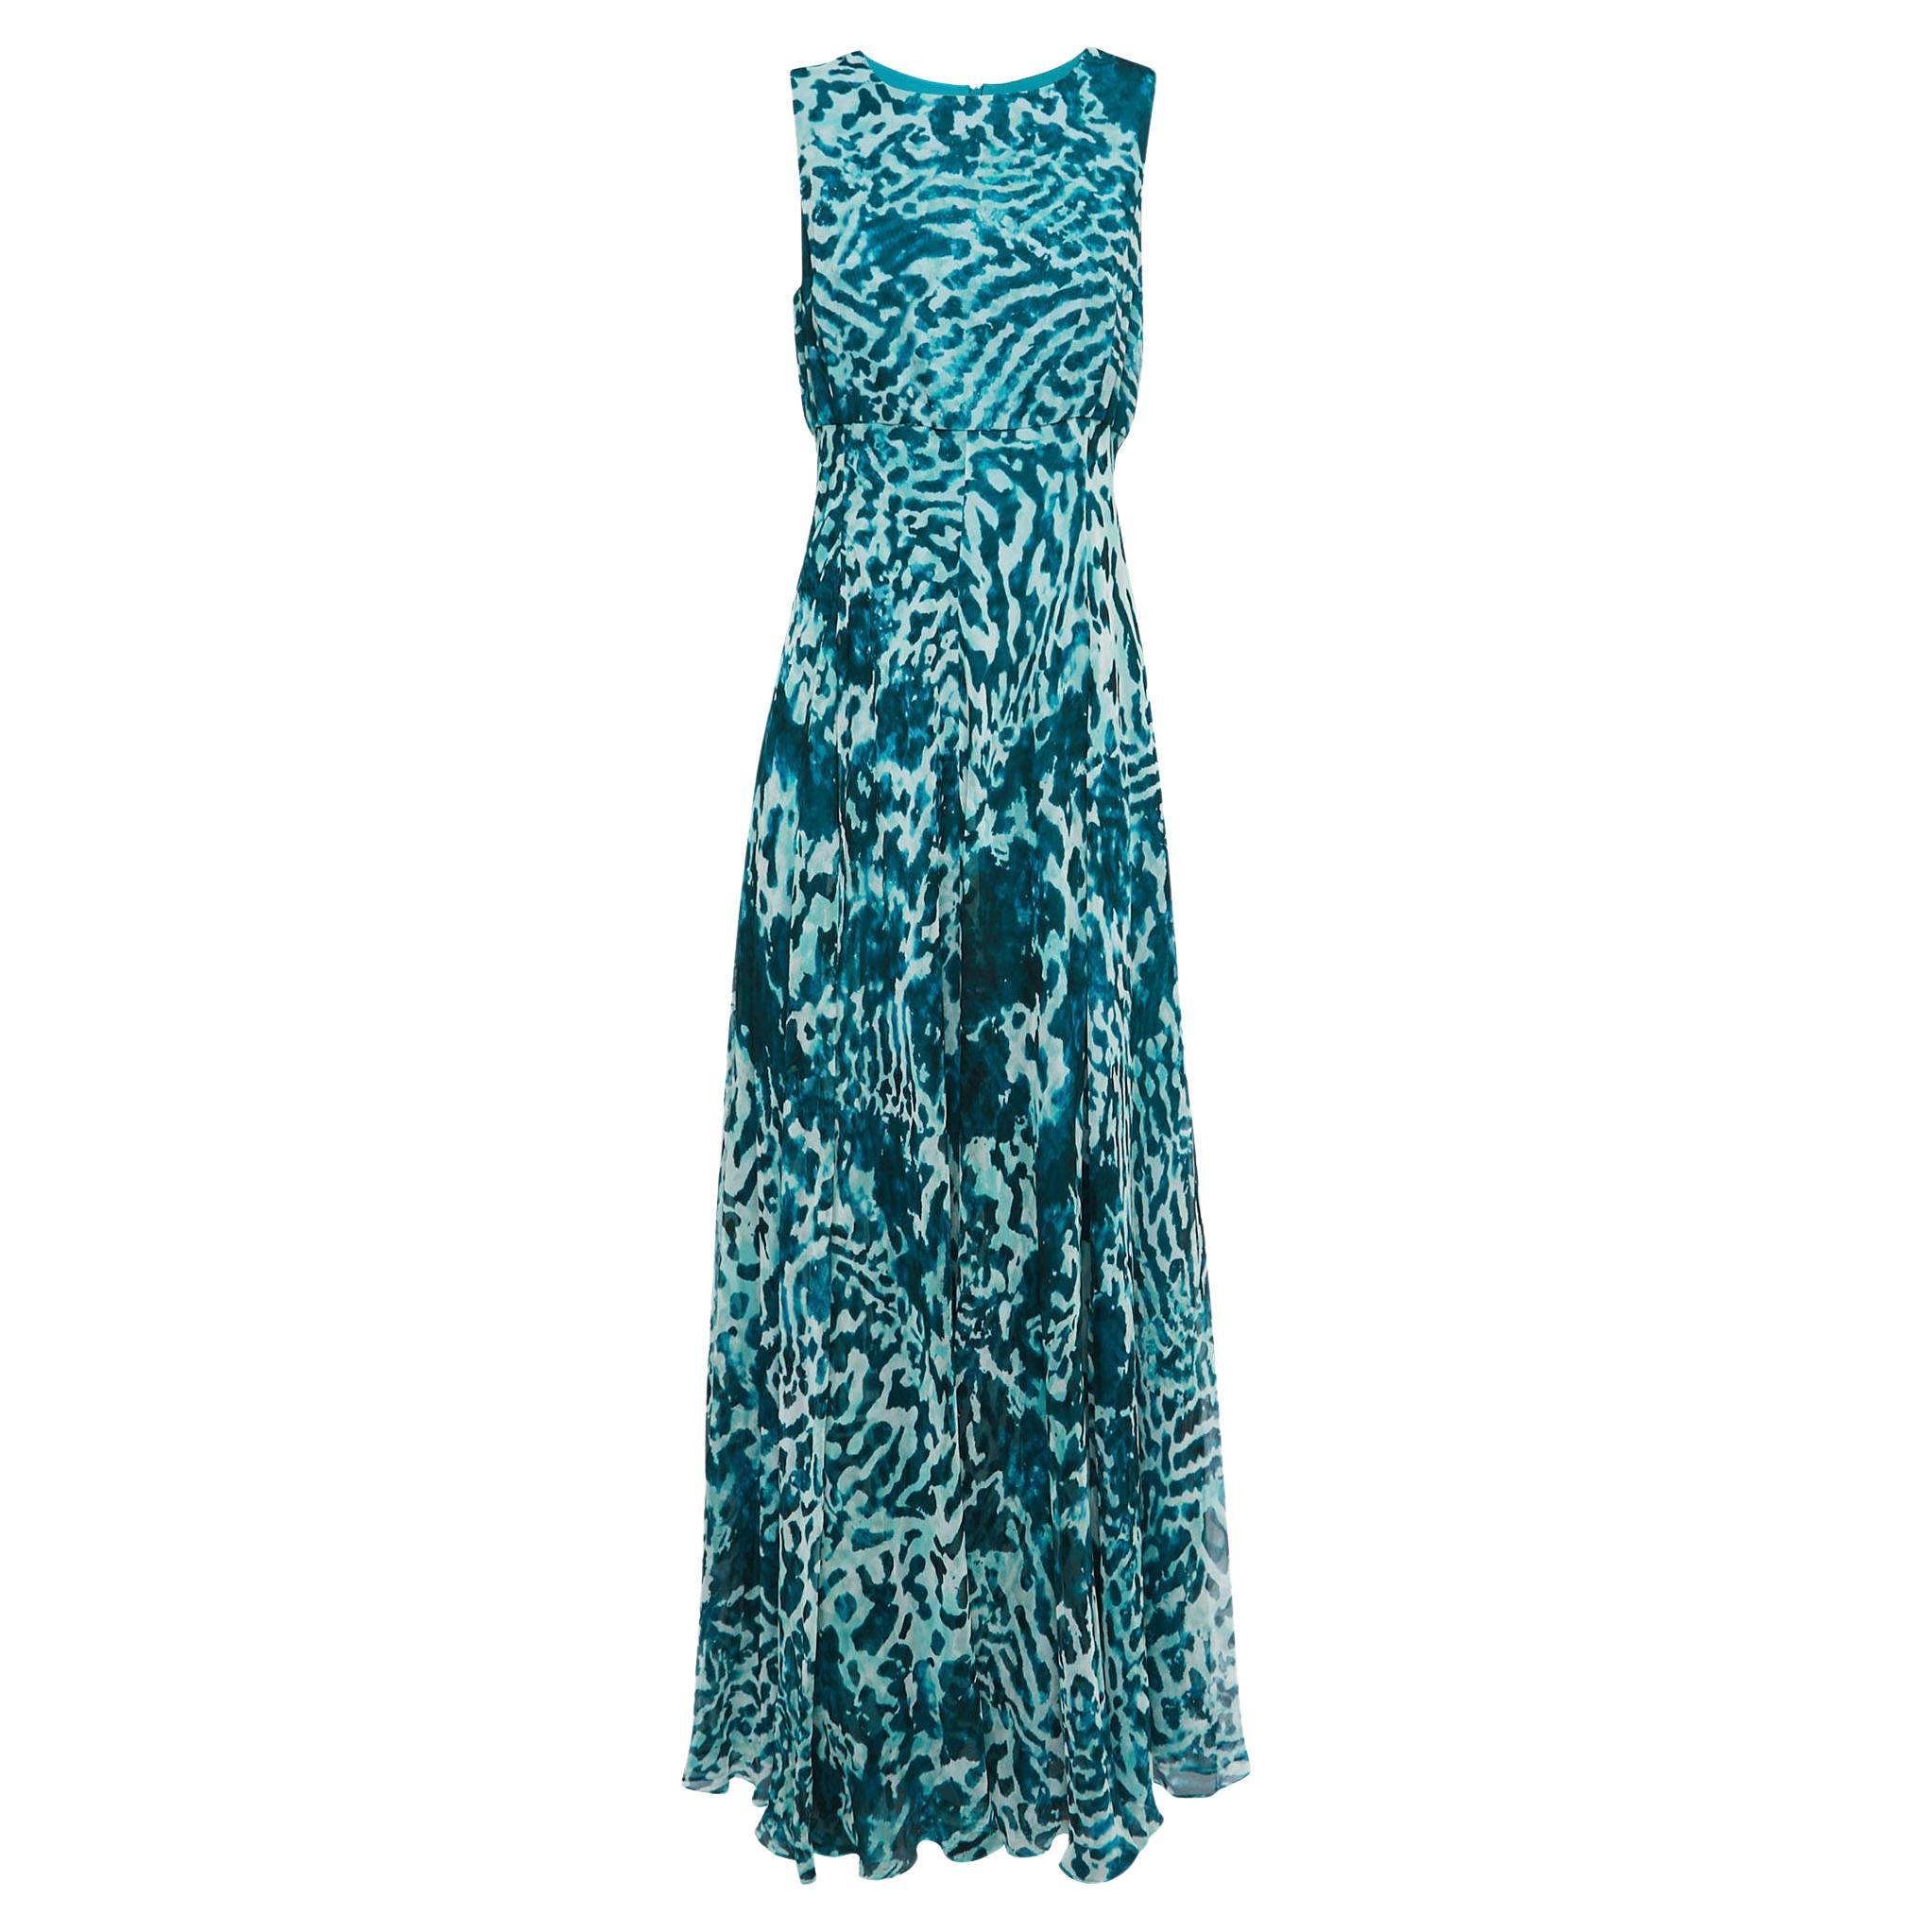 Max Mara Teal Blue Abstract Printed Chiffon Sleeveless Maxi Dress M